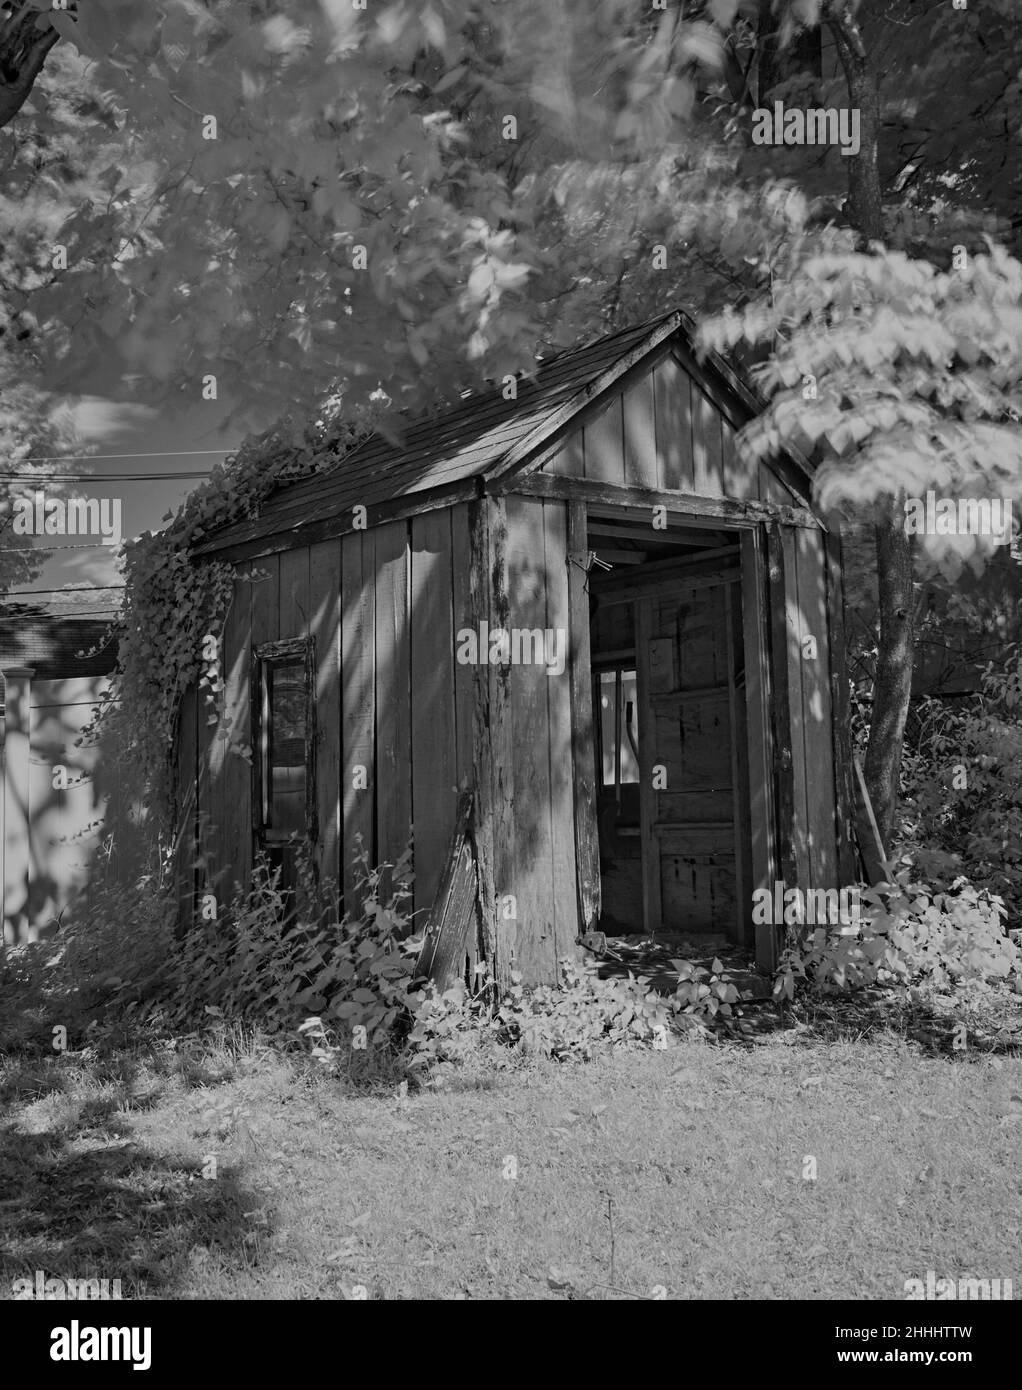 Un joli petit utilitaire ou un abri de stockage ancien.Photographié en noir et blanc et infrarouge.situé à Ridgefield, New Jersey, Etats-Unis. Banque D'Images